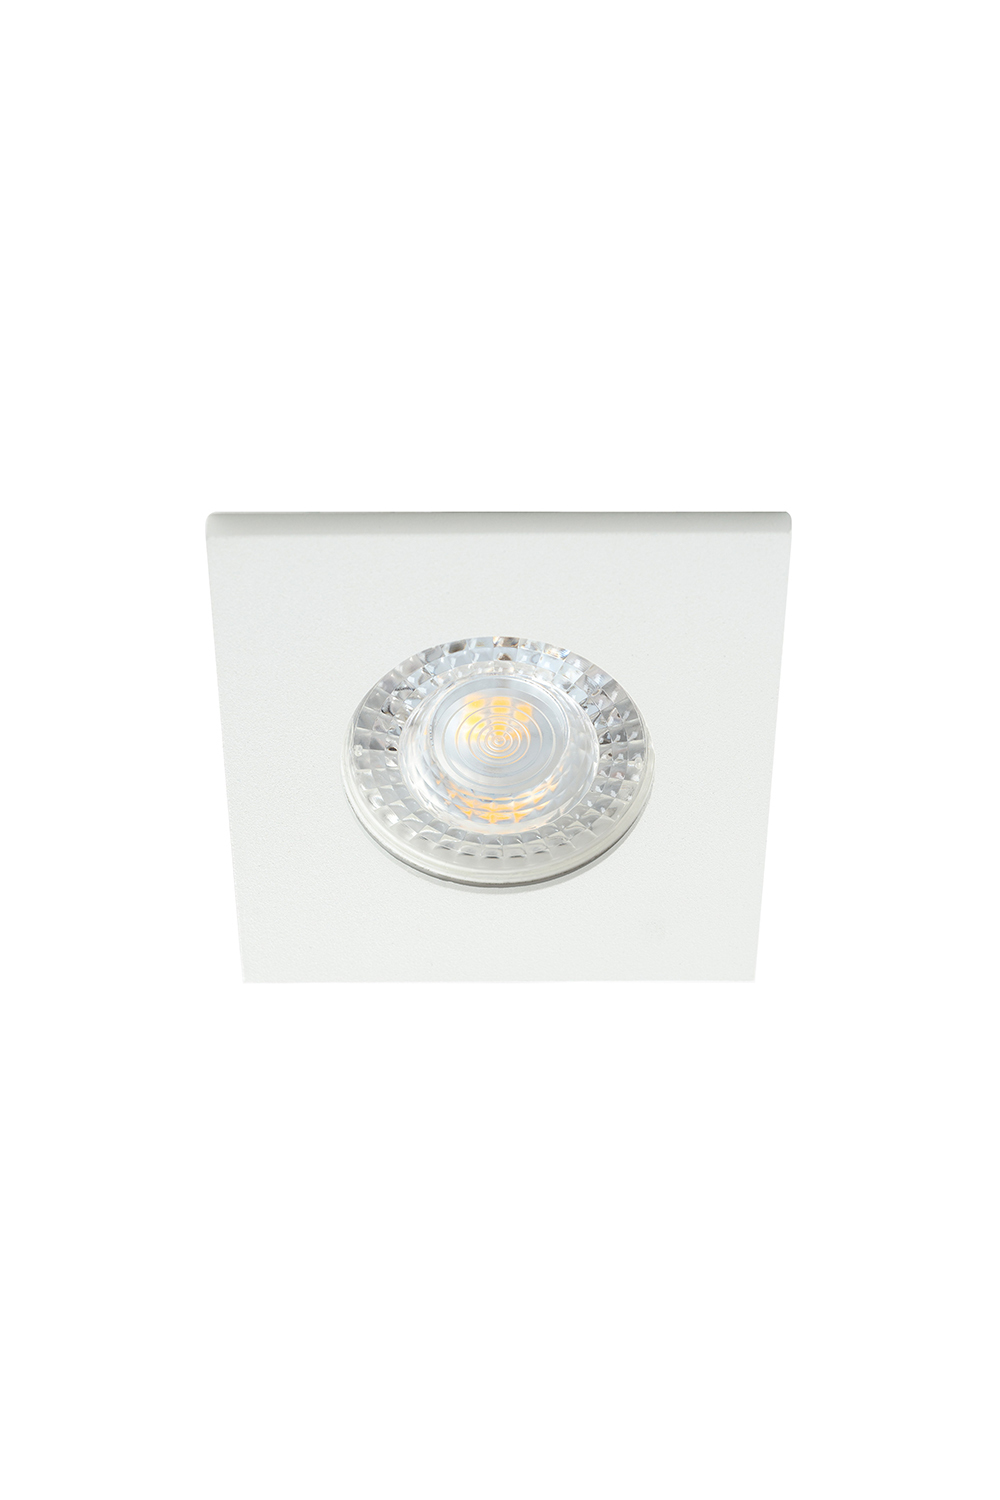 DK2031-WH Встраиваемый светильник, IP 20, 50 Вт, GU10, белый, алюминий